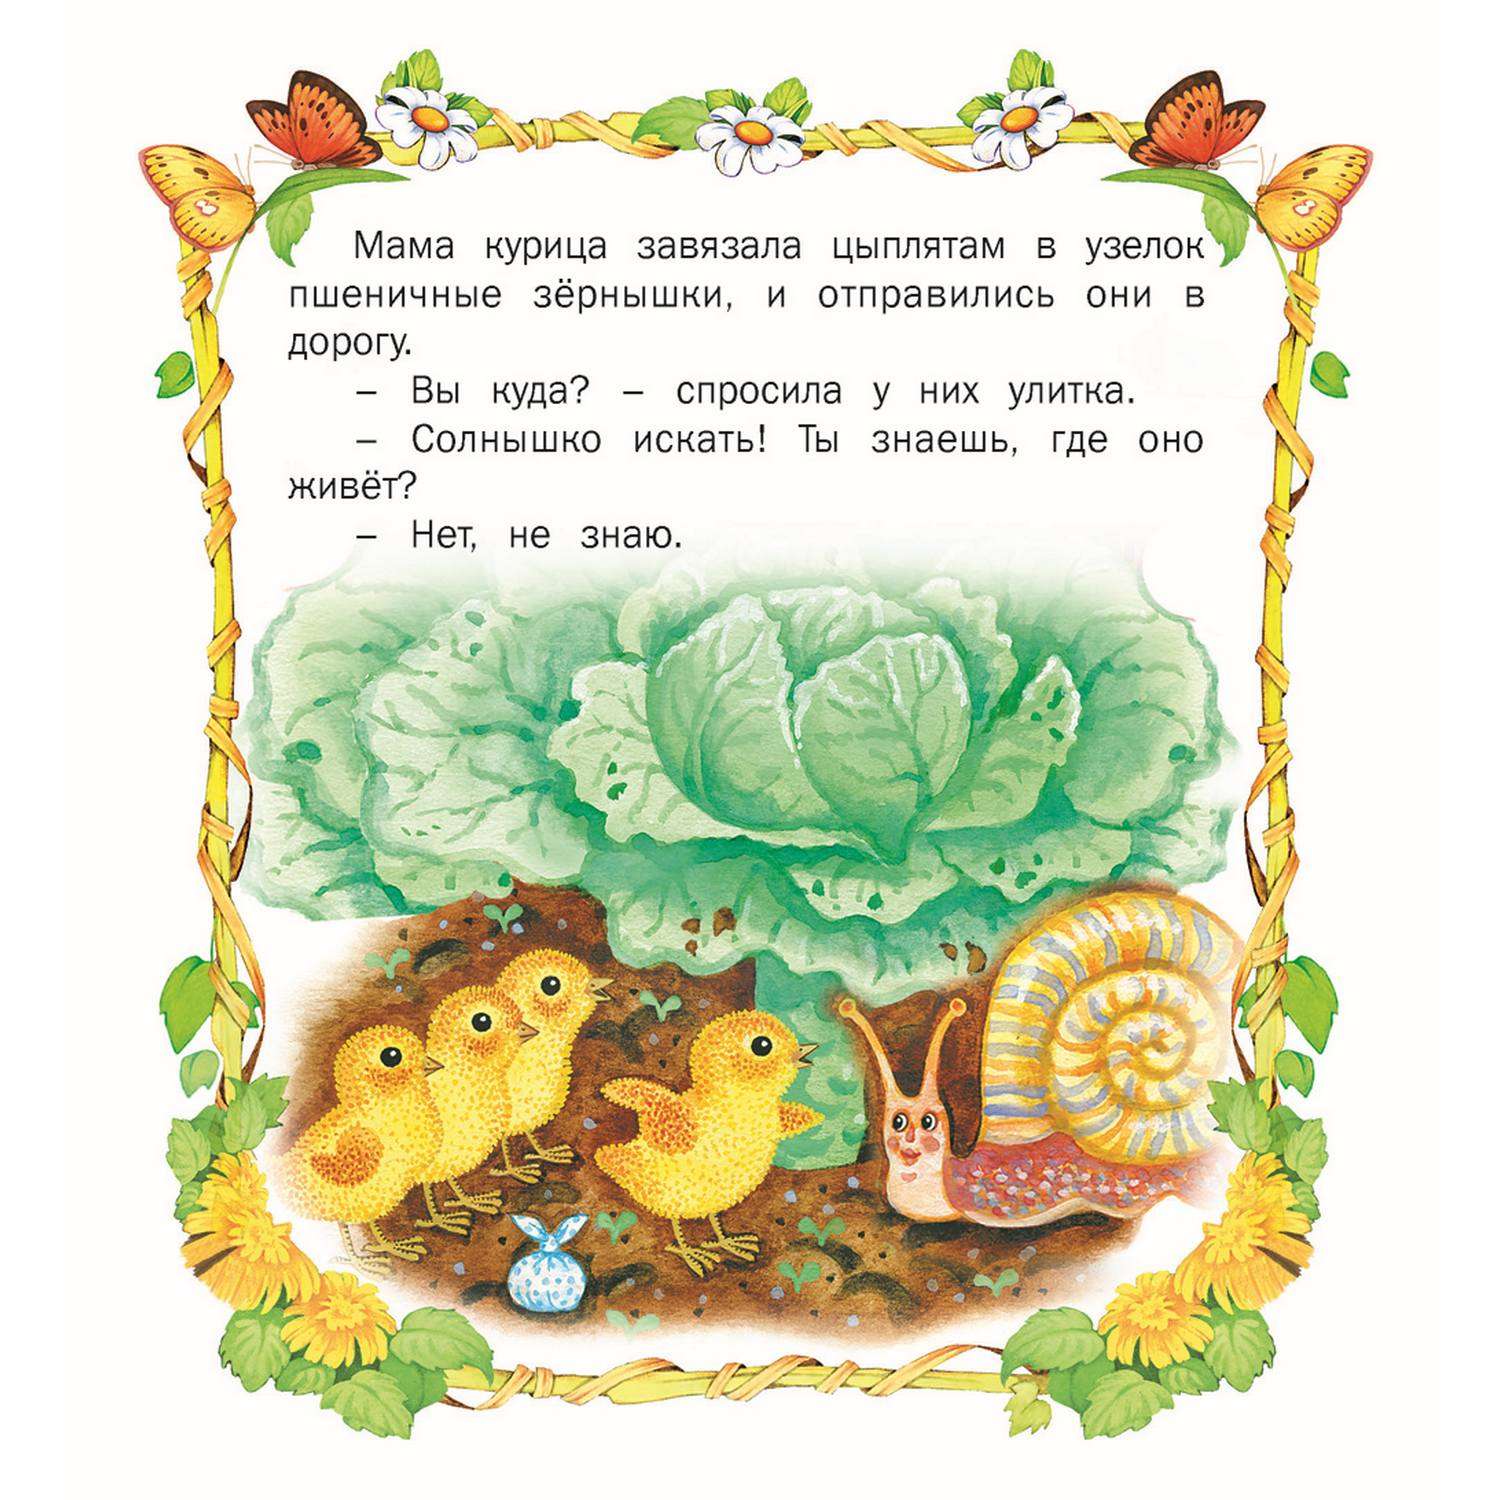 Книга Русич сборник стихов и сказок для детей. Комплект 5 шт - фото 10